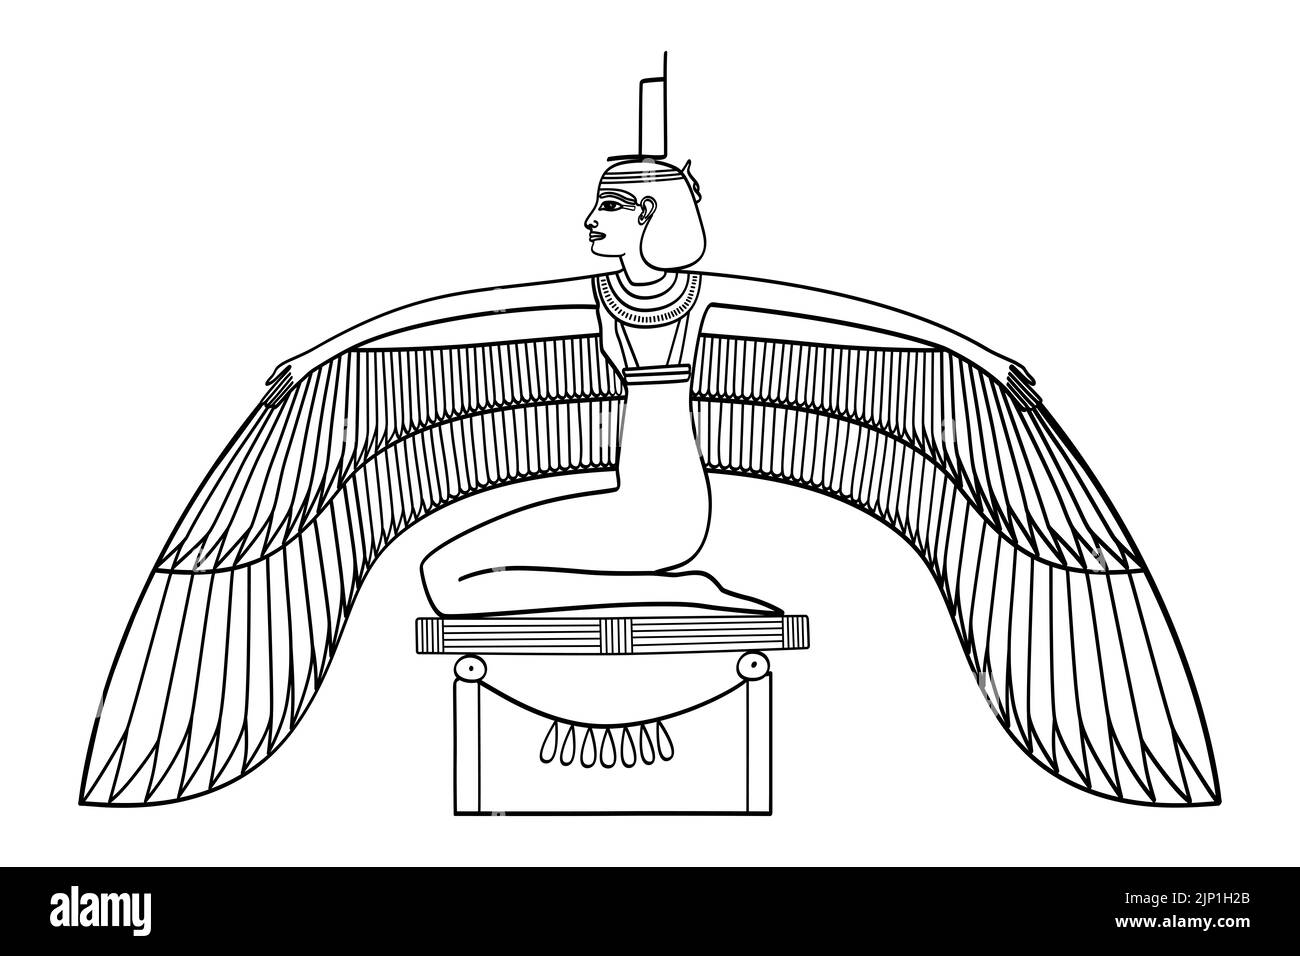 Geflügelte Isis, Göttin der altägyptischen Religion. Im Osiris-Mythos lässt sie ihren Bruder und Ehemann, den göttlichen König Osiris, wieder auferstehen, der von Seth getötet wurde. Stockfoto